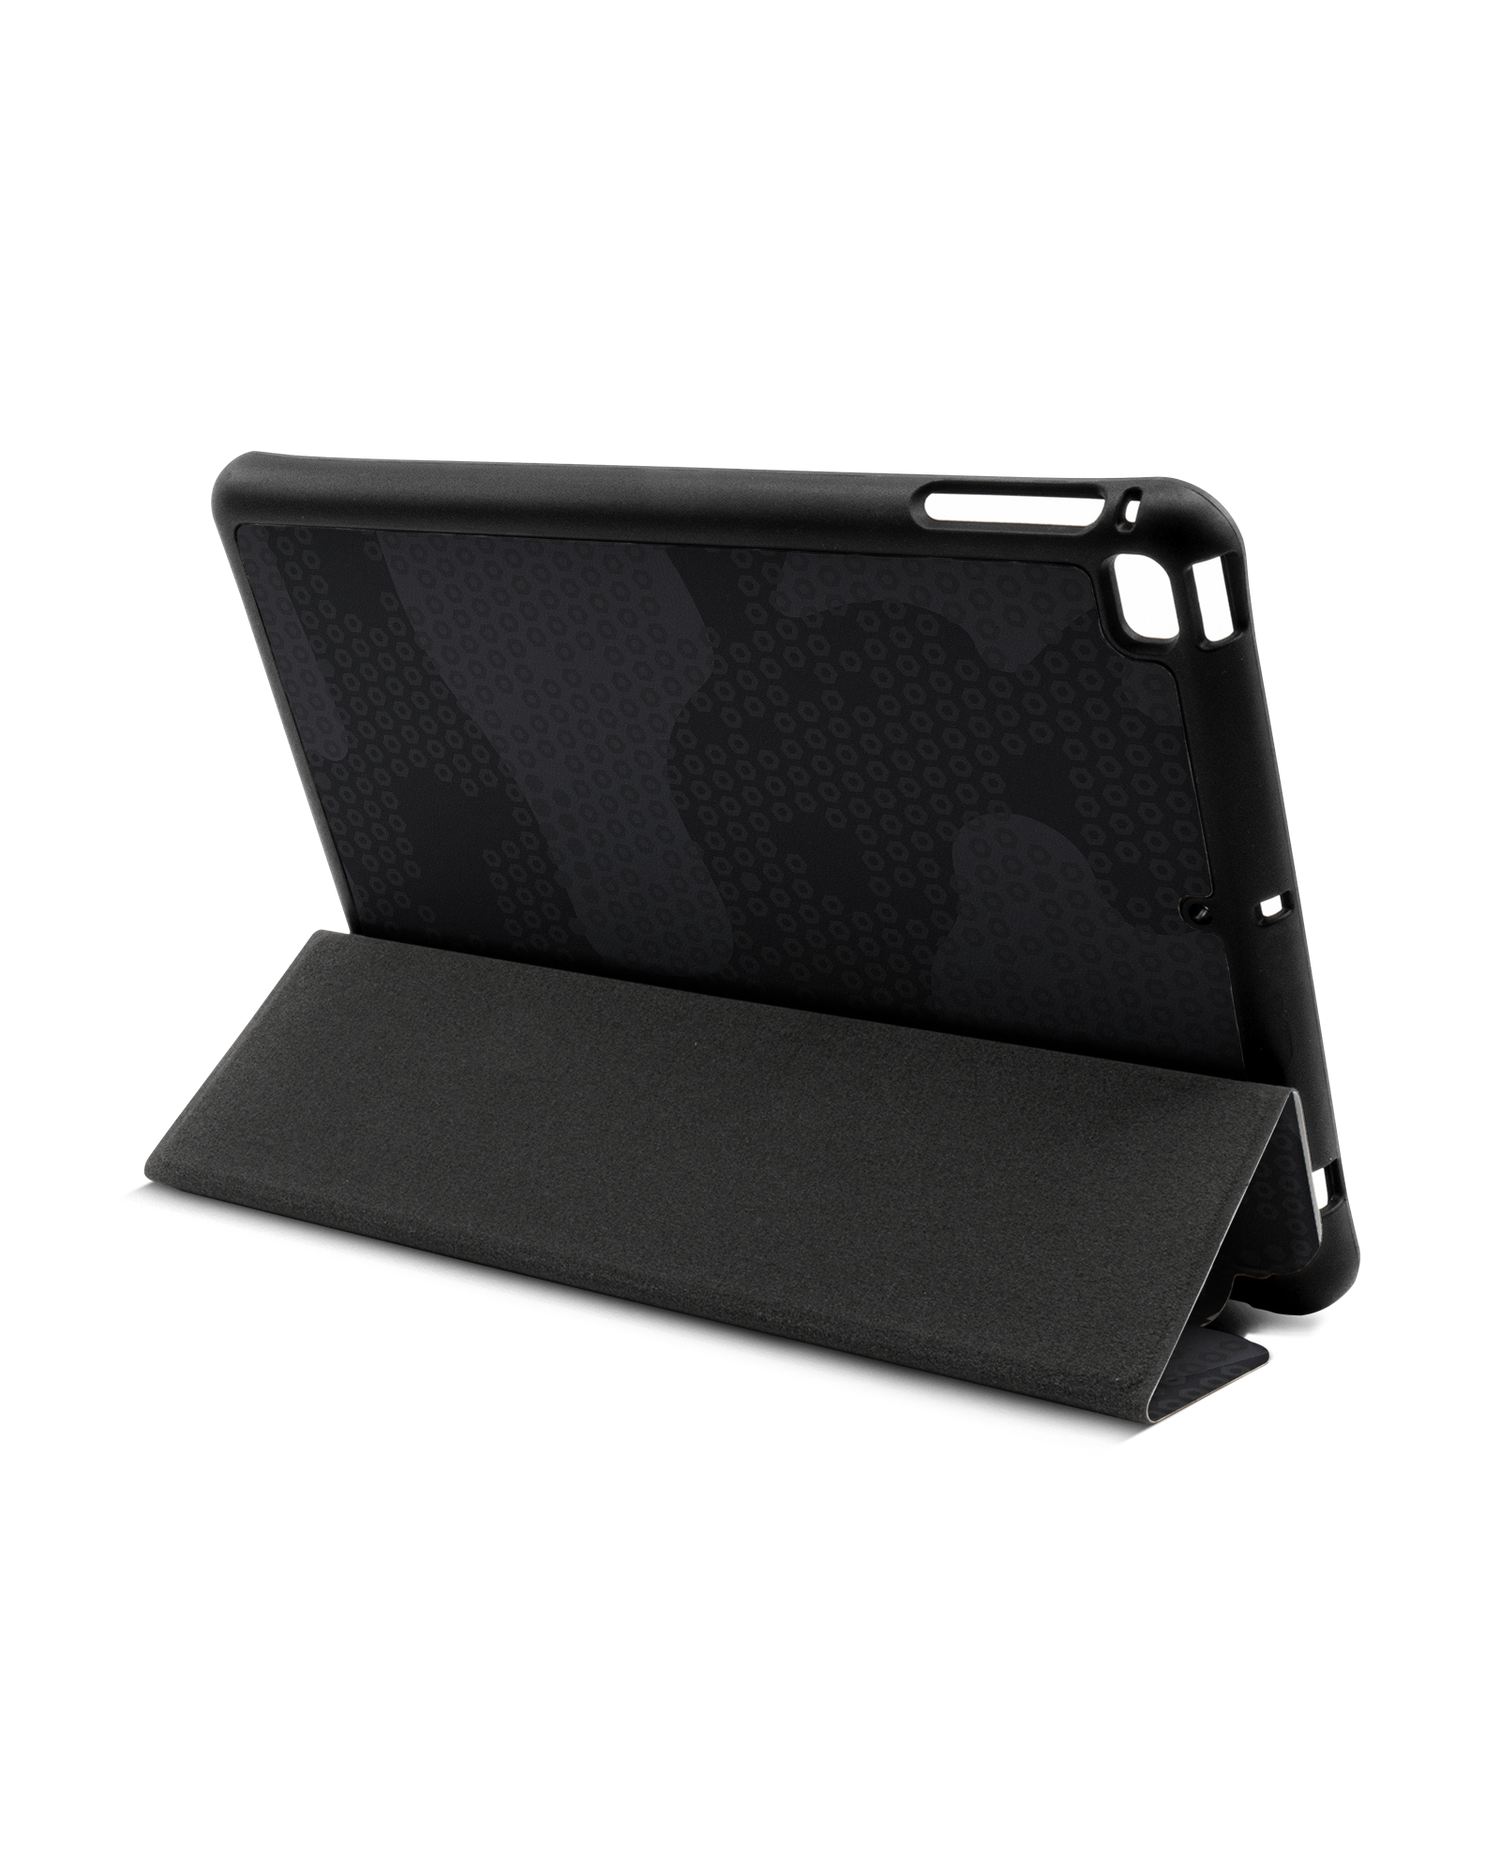 Spec Ops Dark iPad Hülle mit Stifthalter Apple iPad mini 5 (2019): Aufgestellt im Querformat von hinten